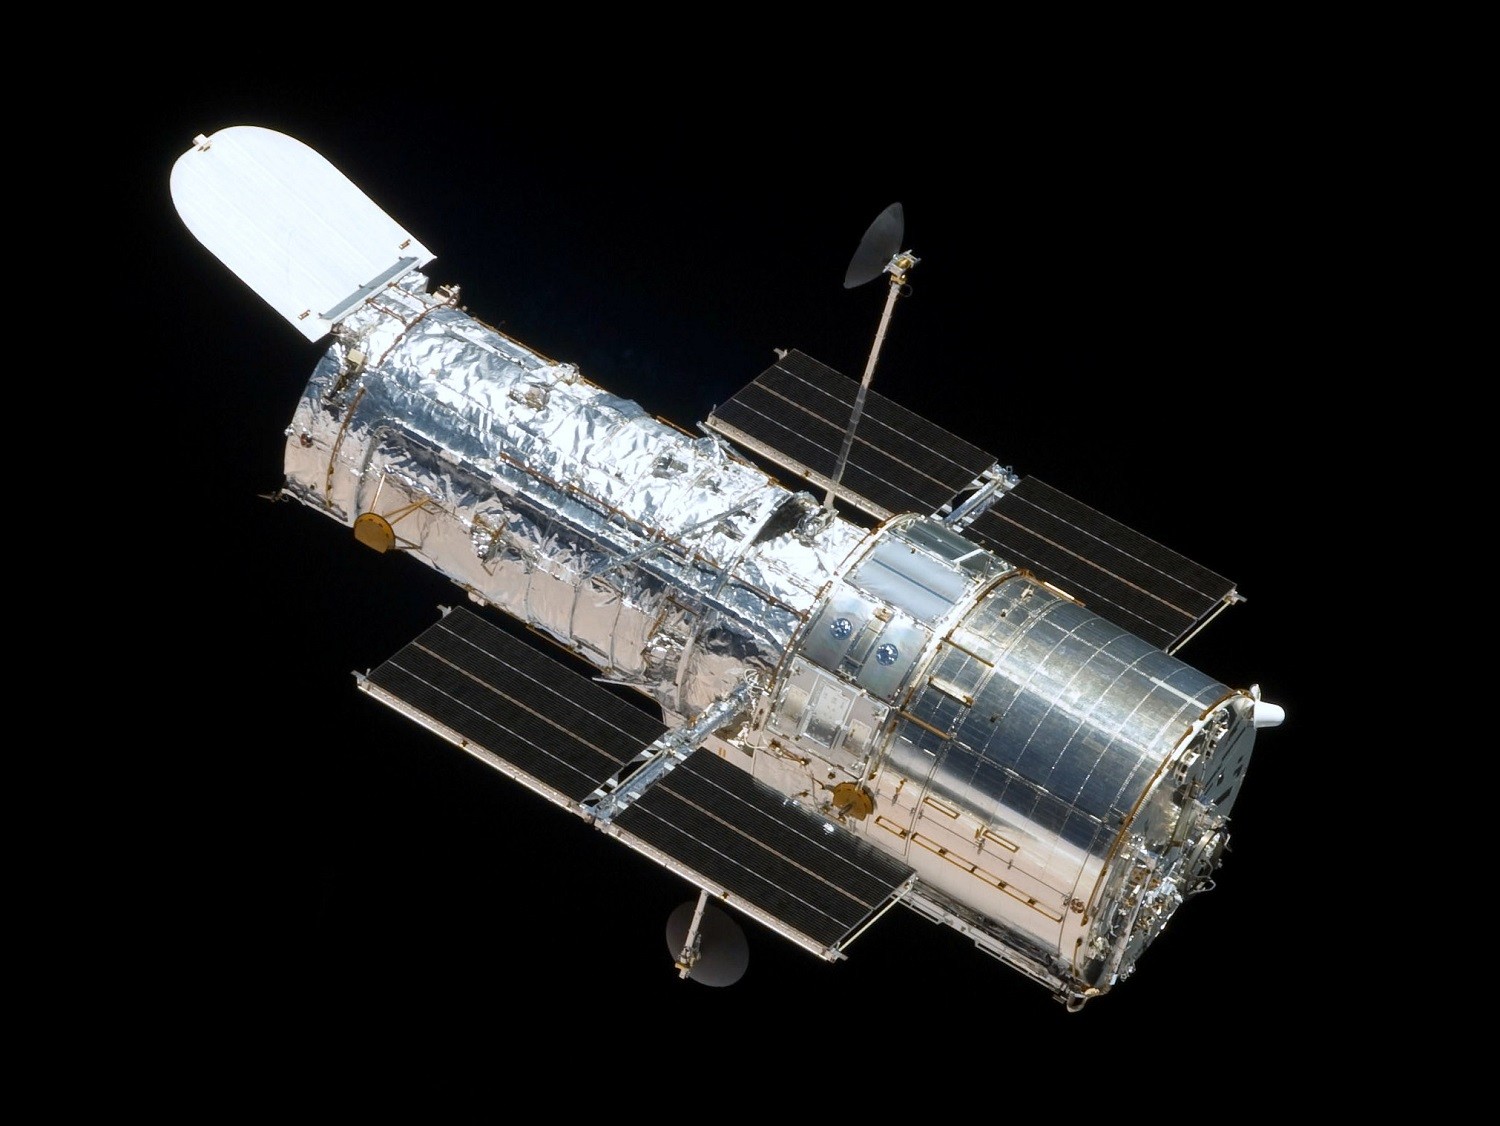 Kosmiczny Teleskop Hubble’a spada, a konsekwencje widać nawet na zdjęciach 